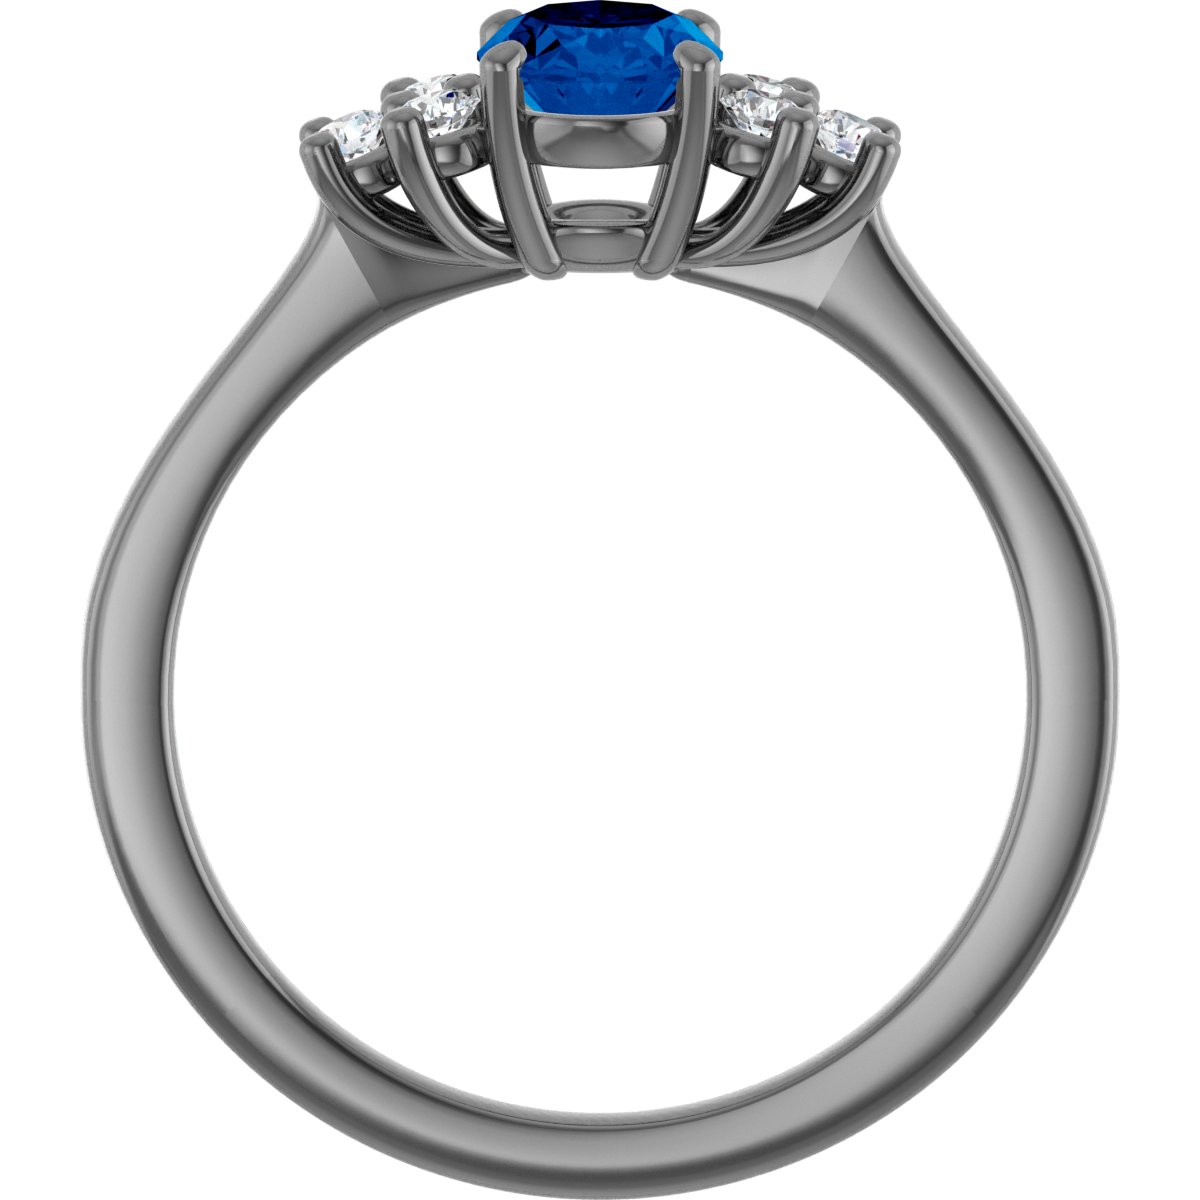 Green Quartz & Diamond Accented Ring - 66630:60001:P